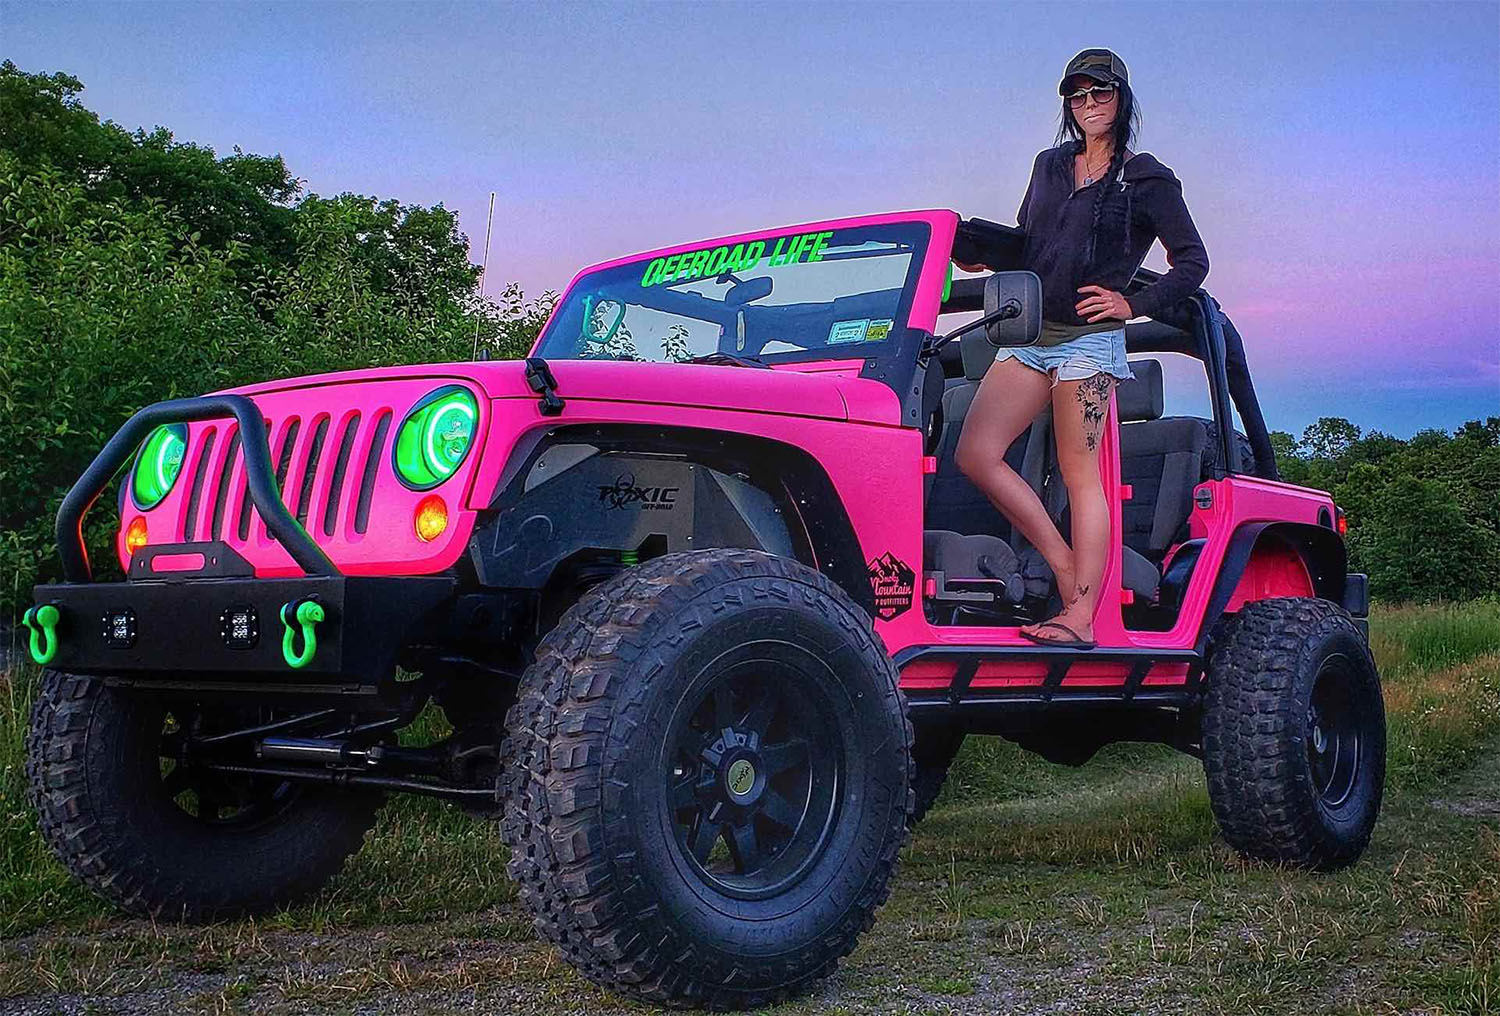 Jeep Wrangler JK Rock Sliders 4 Doors Hot Pink